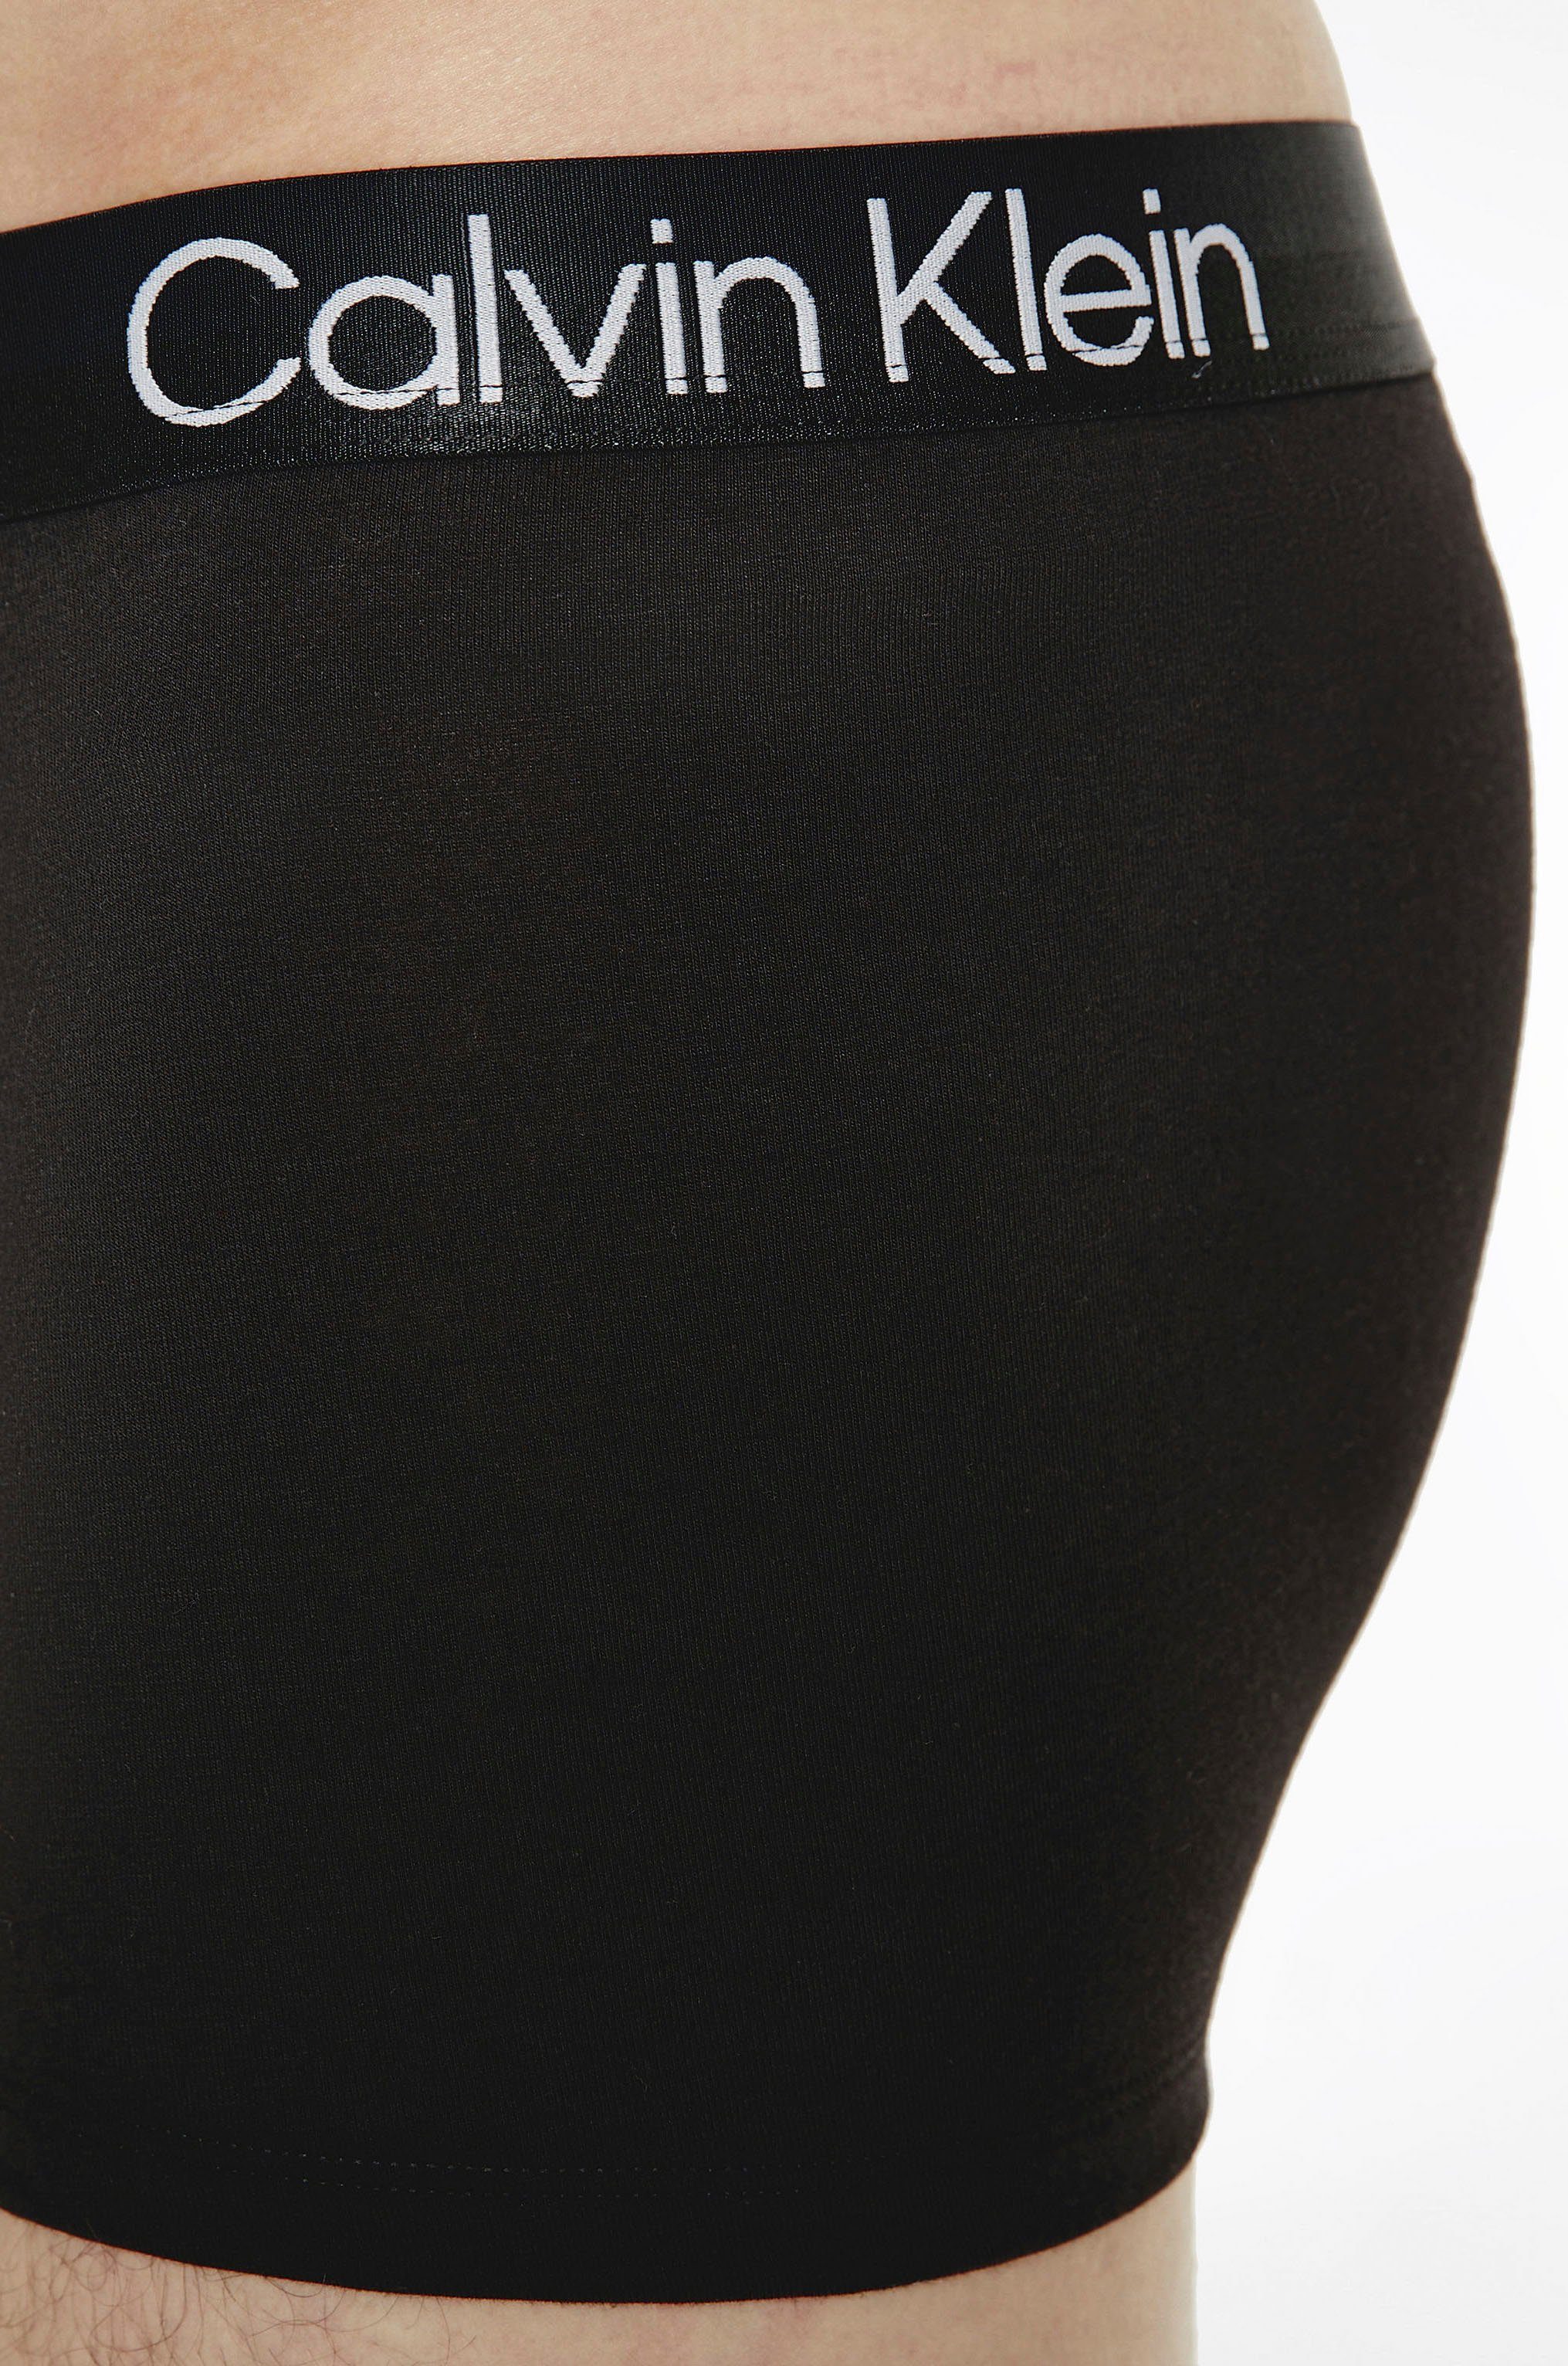 dem Calvin grau, Trunk schwarz, Klein 3-St) mit weiß Bund Underwear auf (Packung, Logoschriftzug